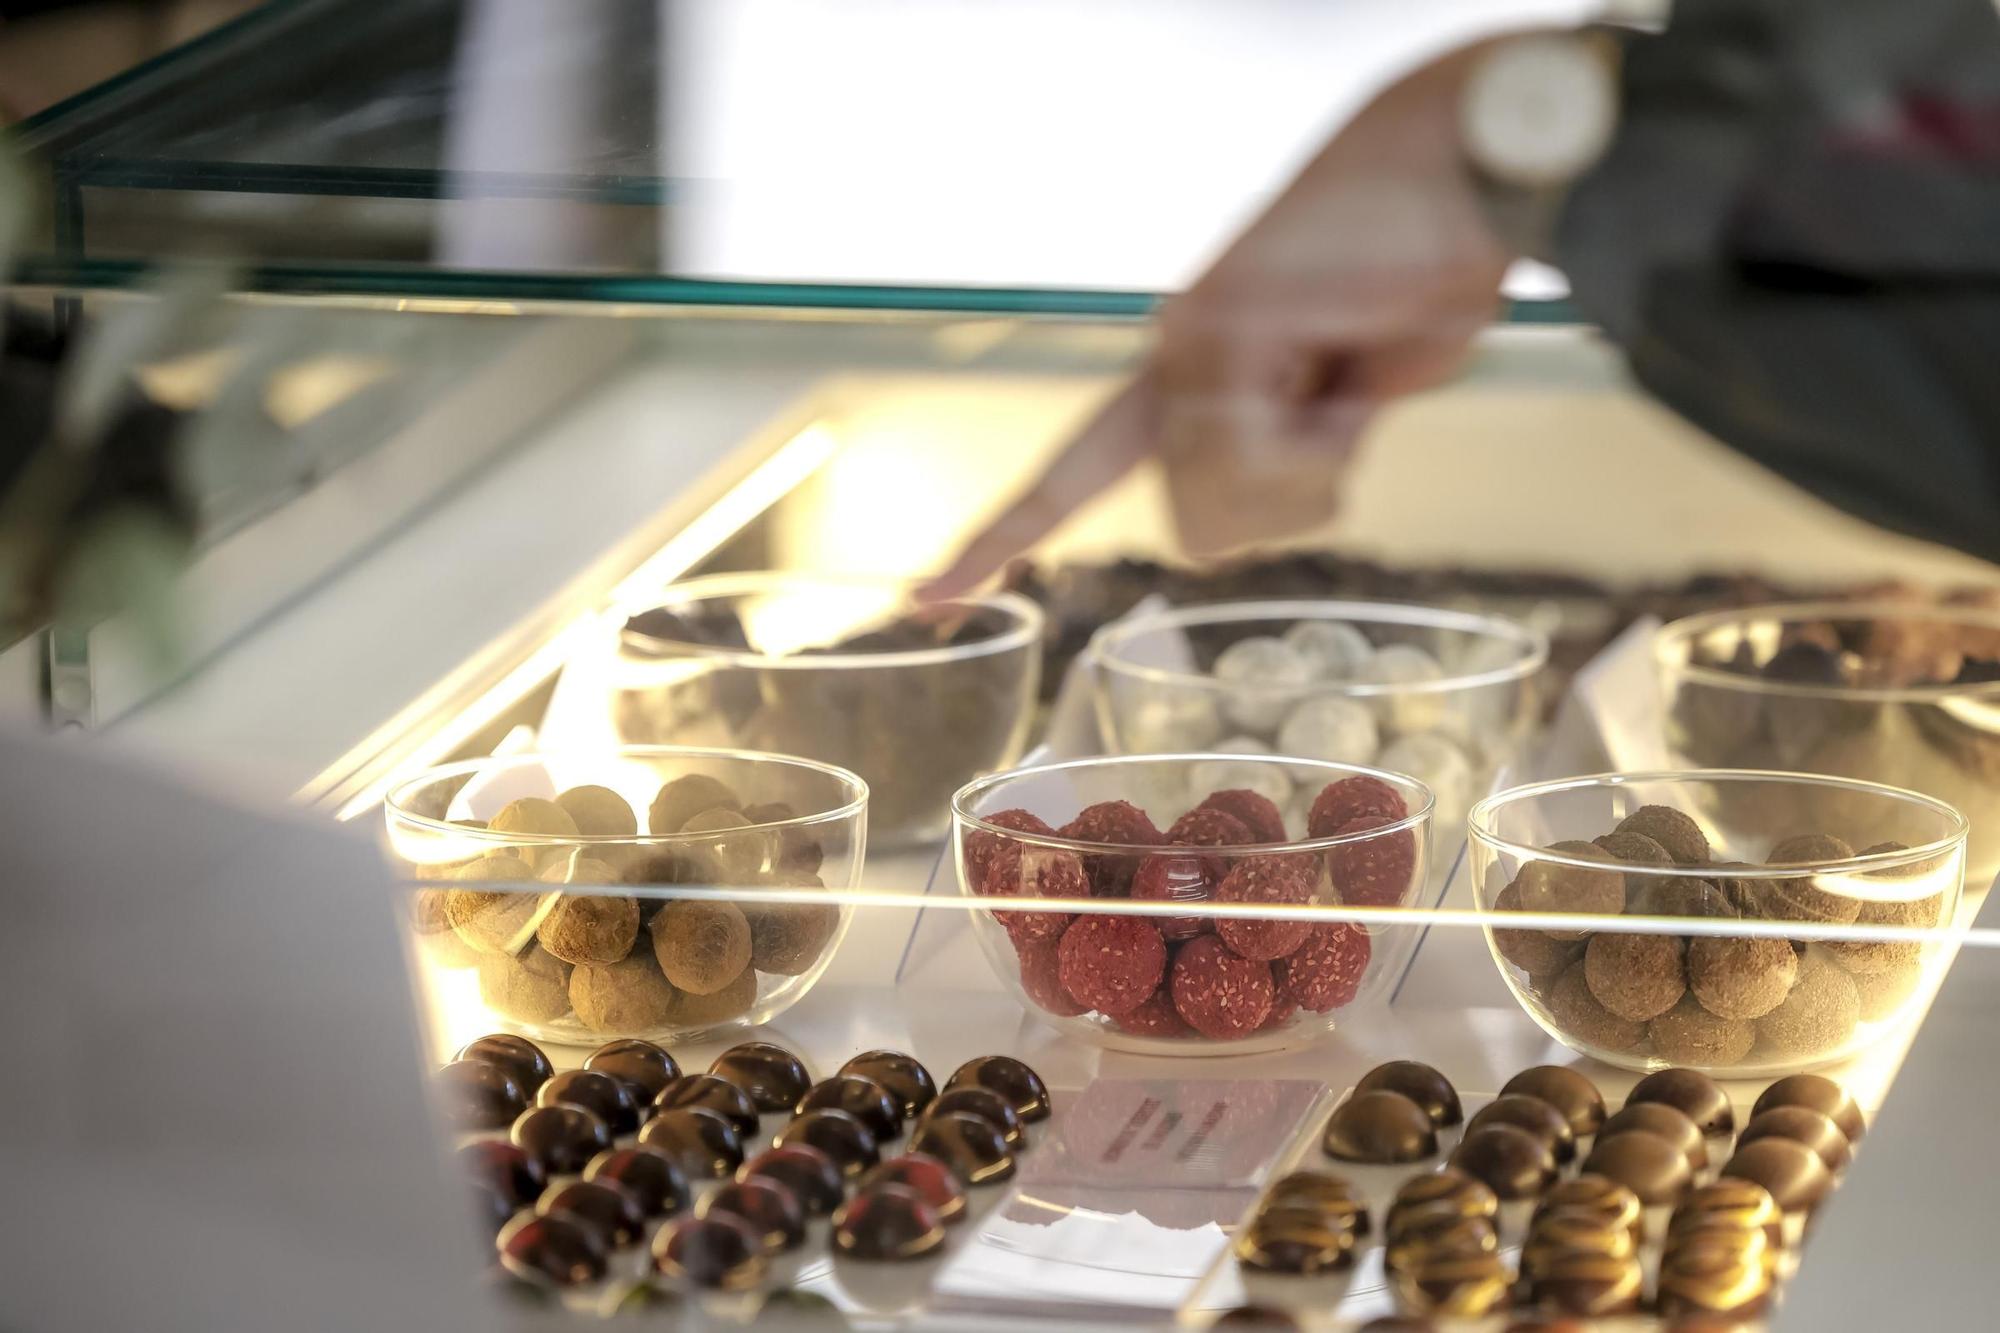 La tienda y fábrica de chocolate Maüa abre en la calle Blanquerna de Palma